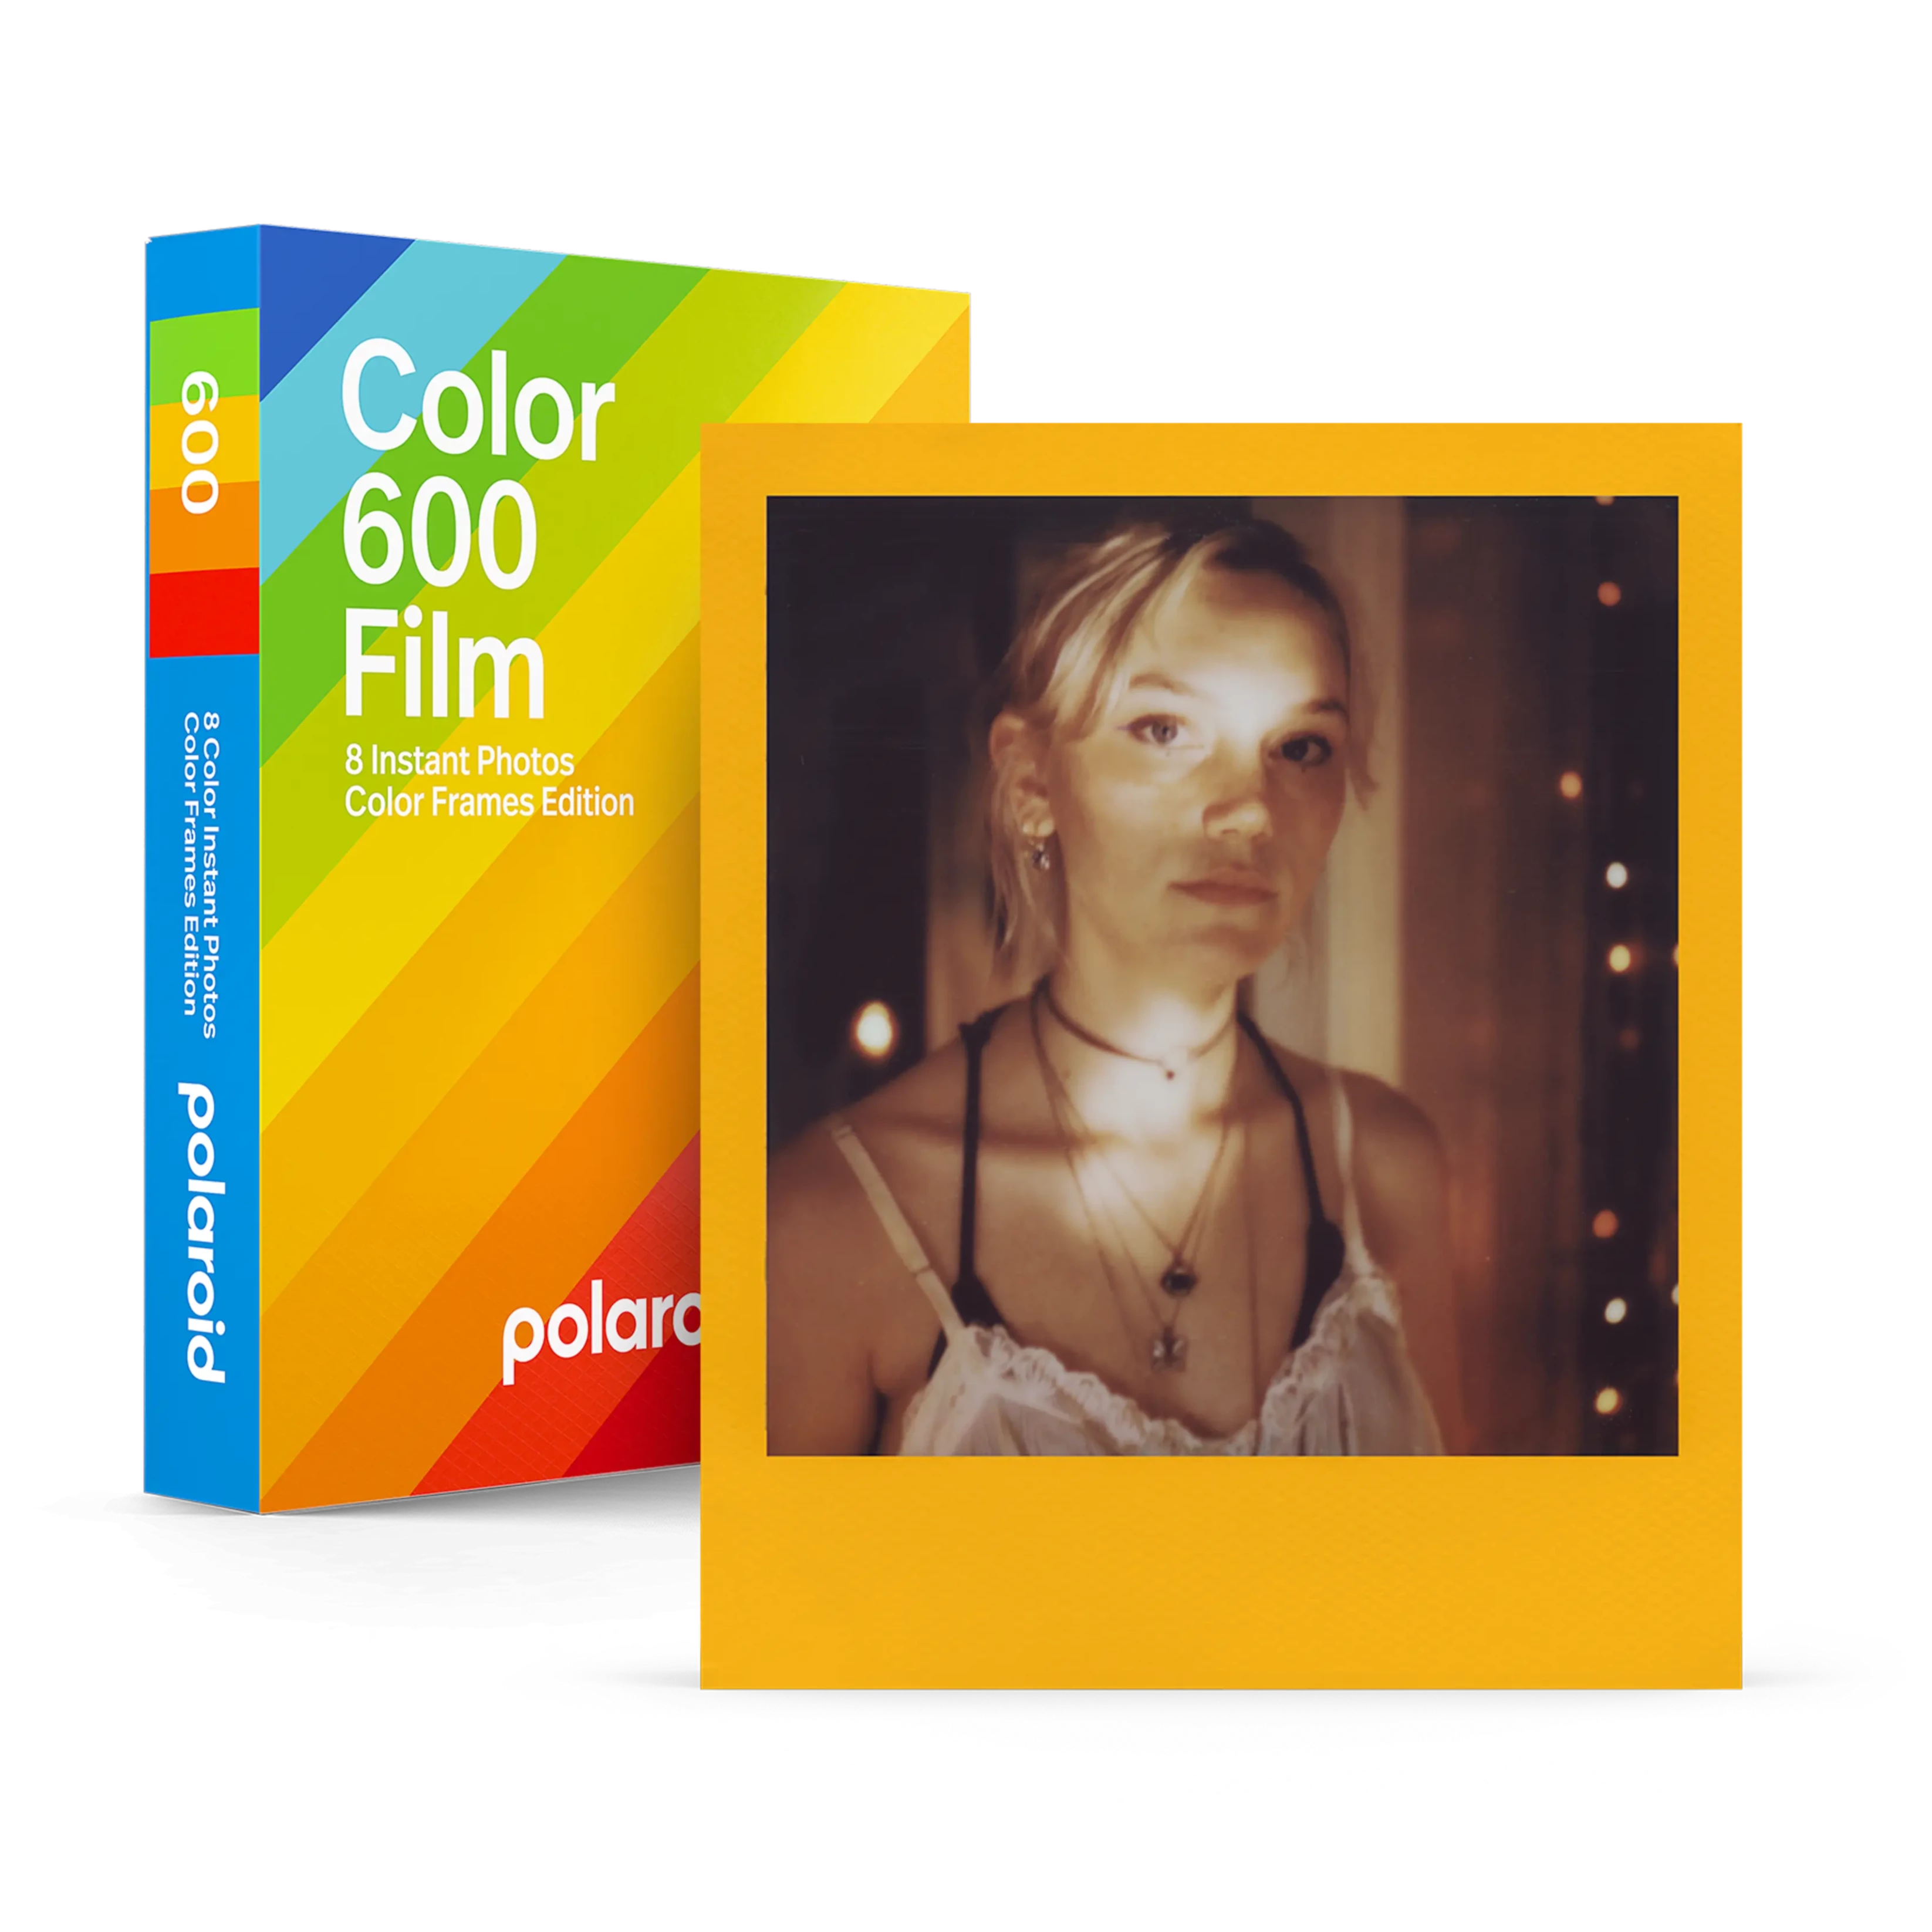 Color 600 Film - Color Frames